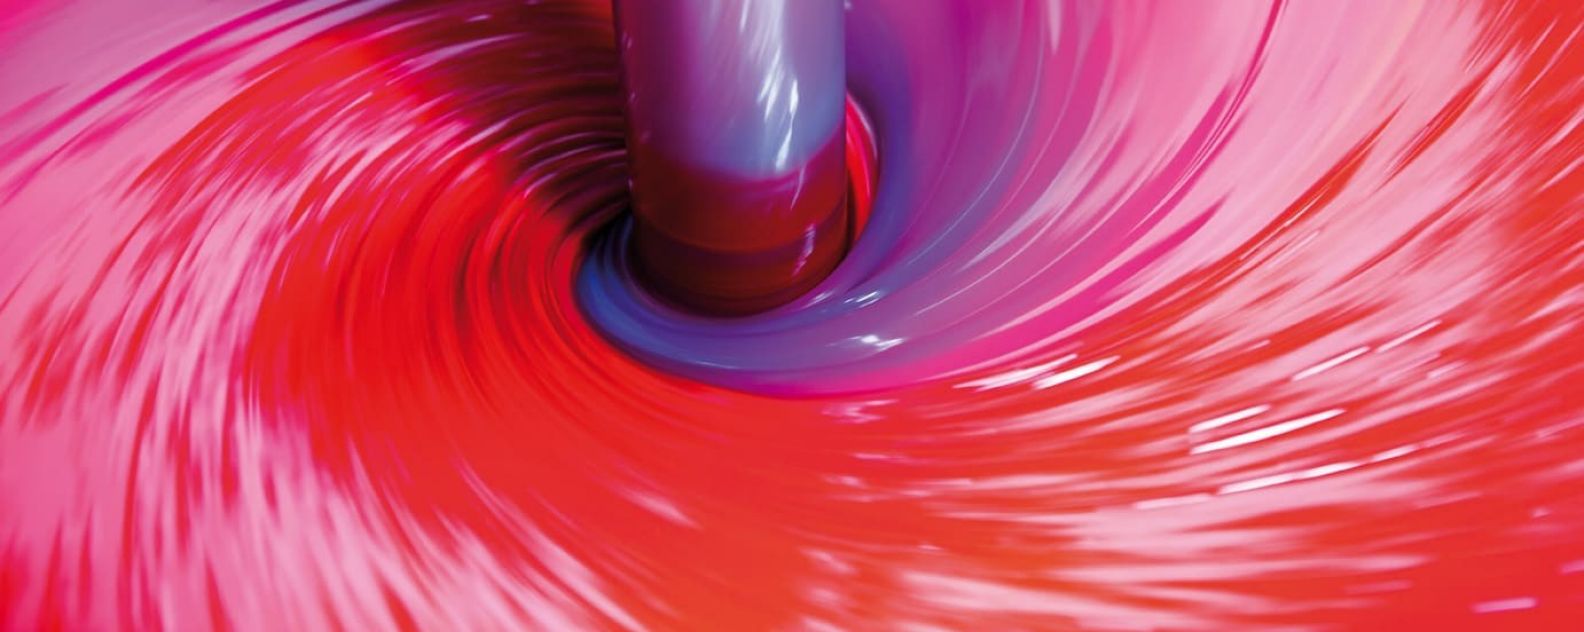 紫と赤の化学物質が混合されている大きなバット